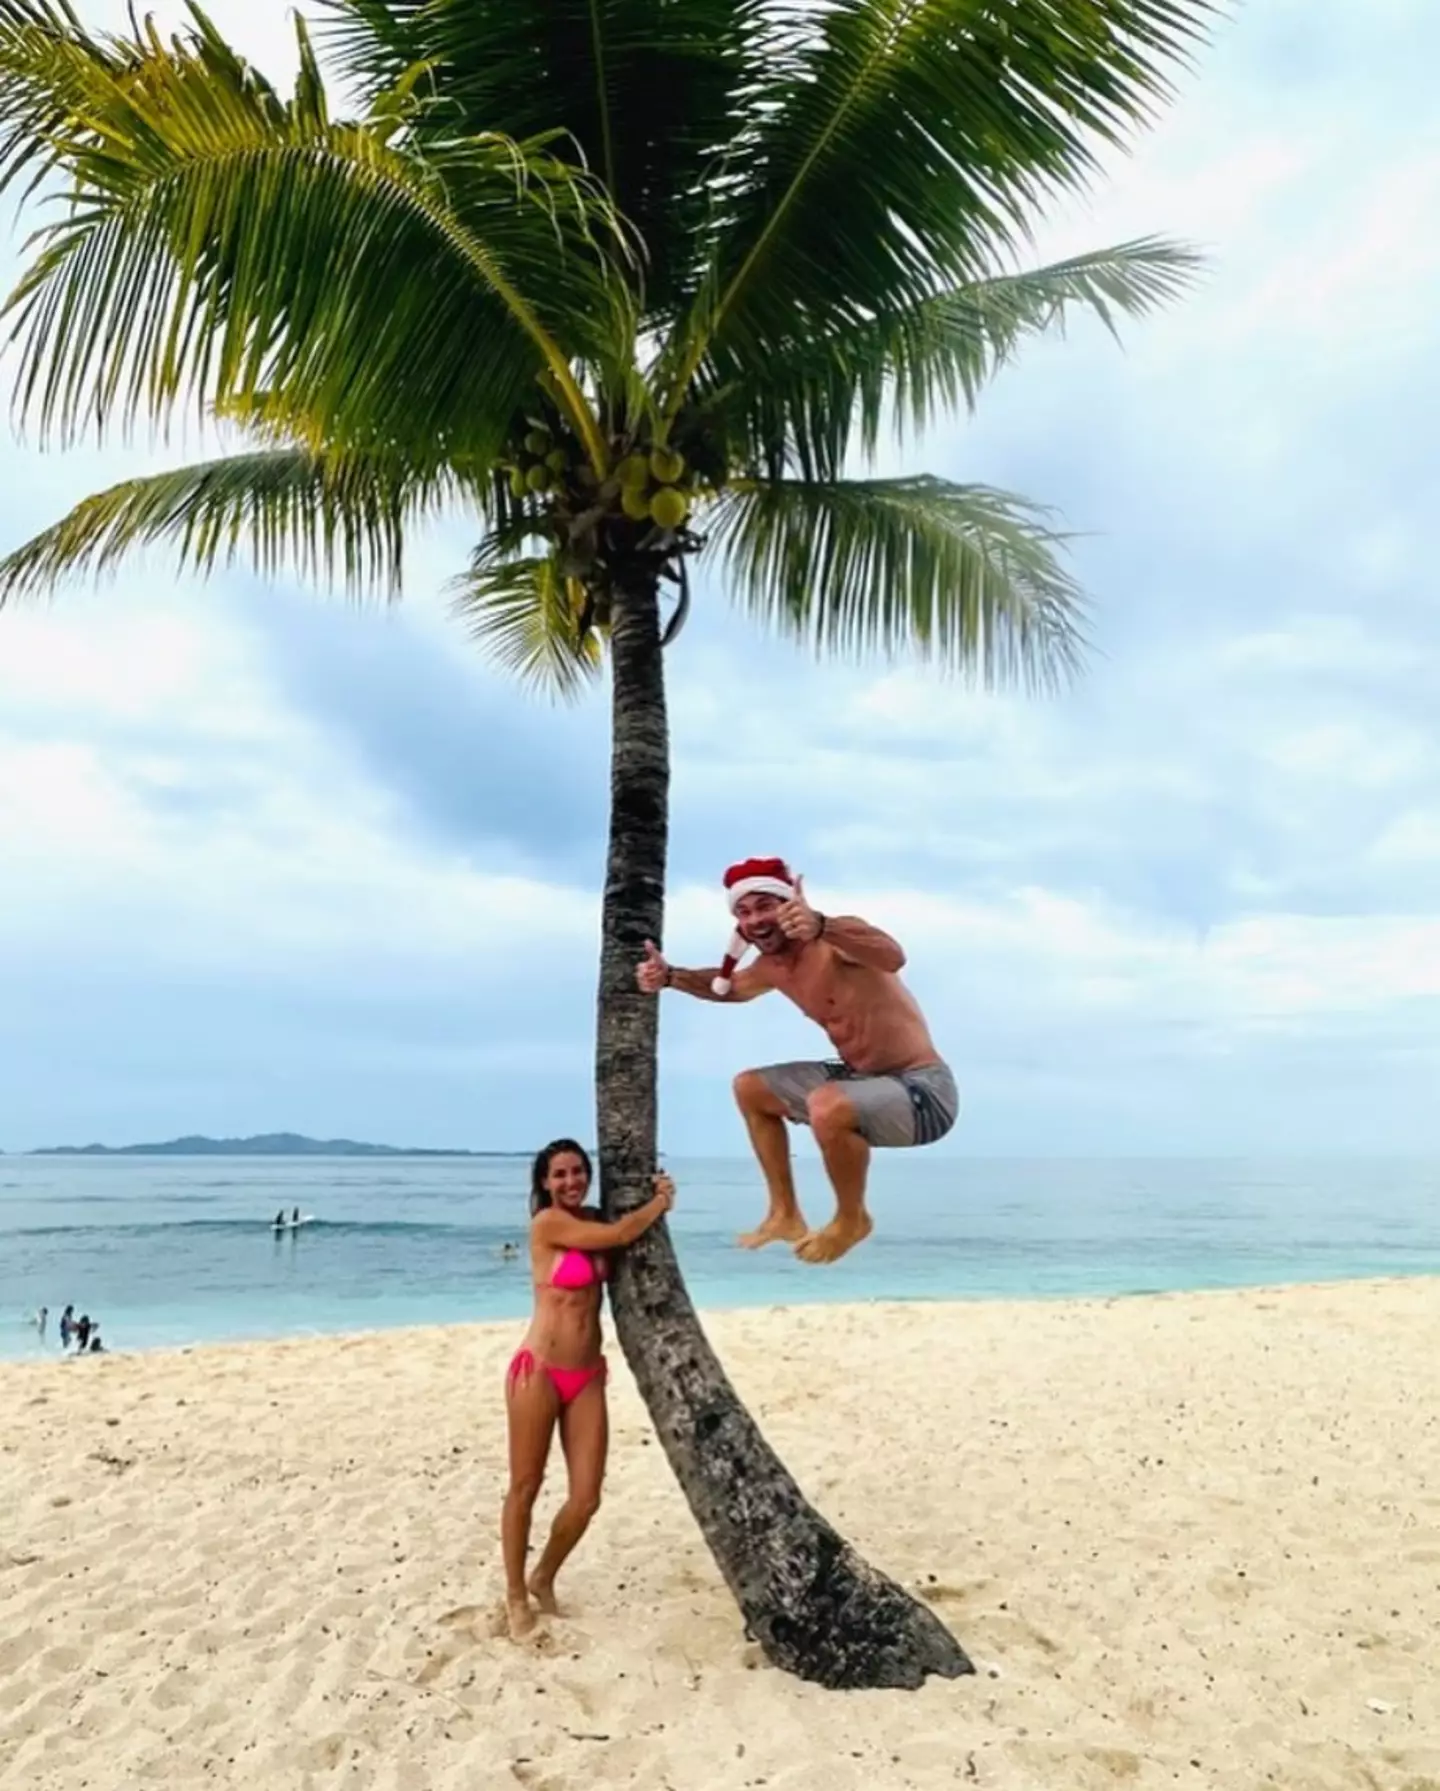 Hemsworth spent Christmas in Fiji this year.